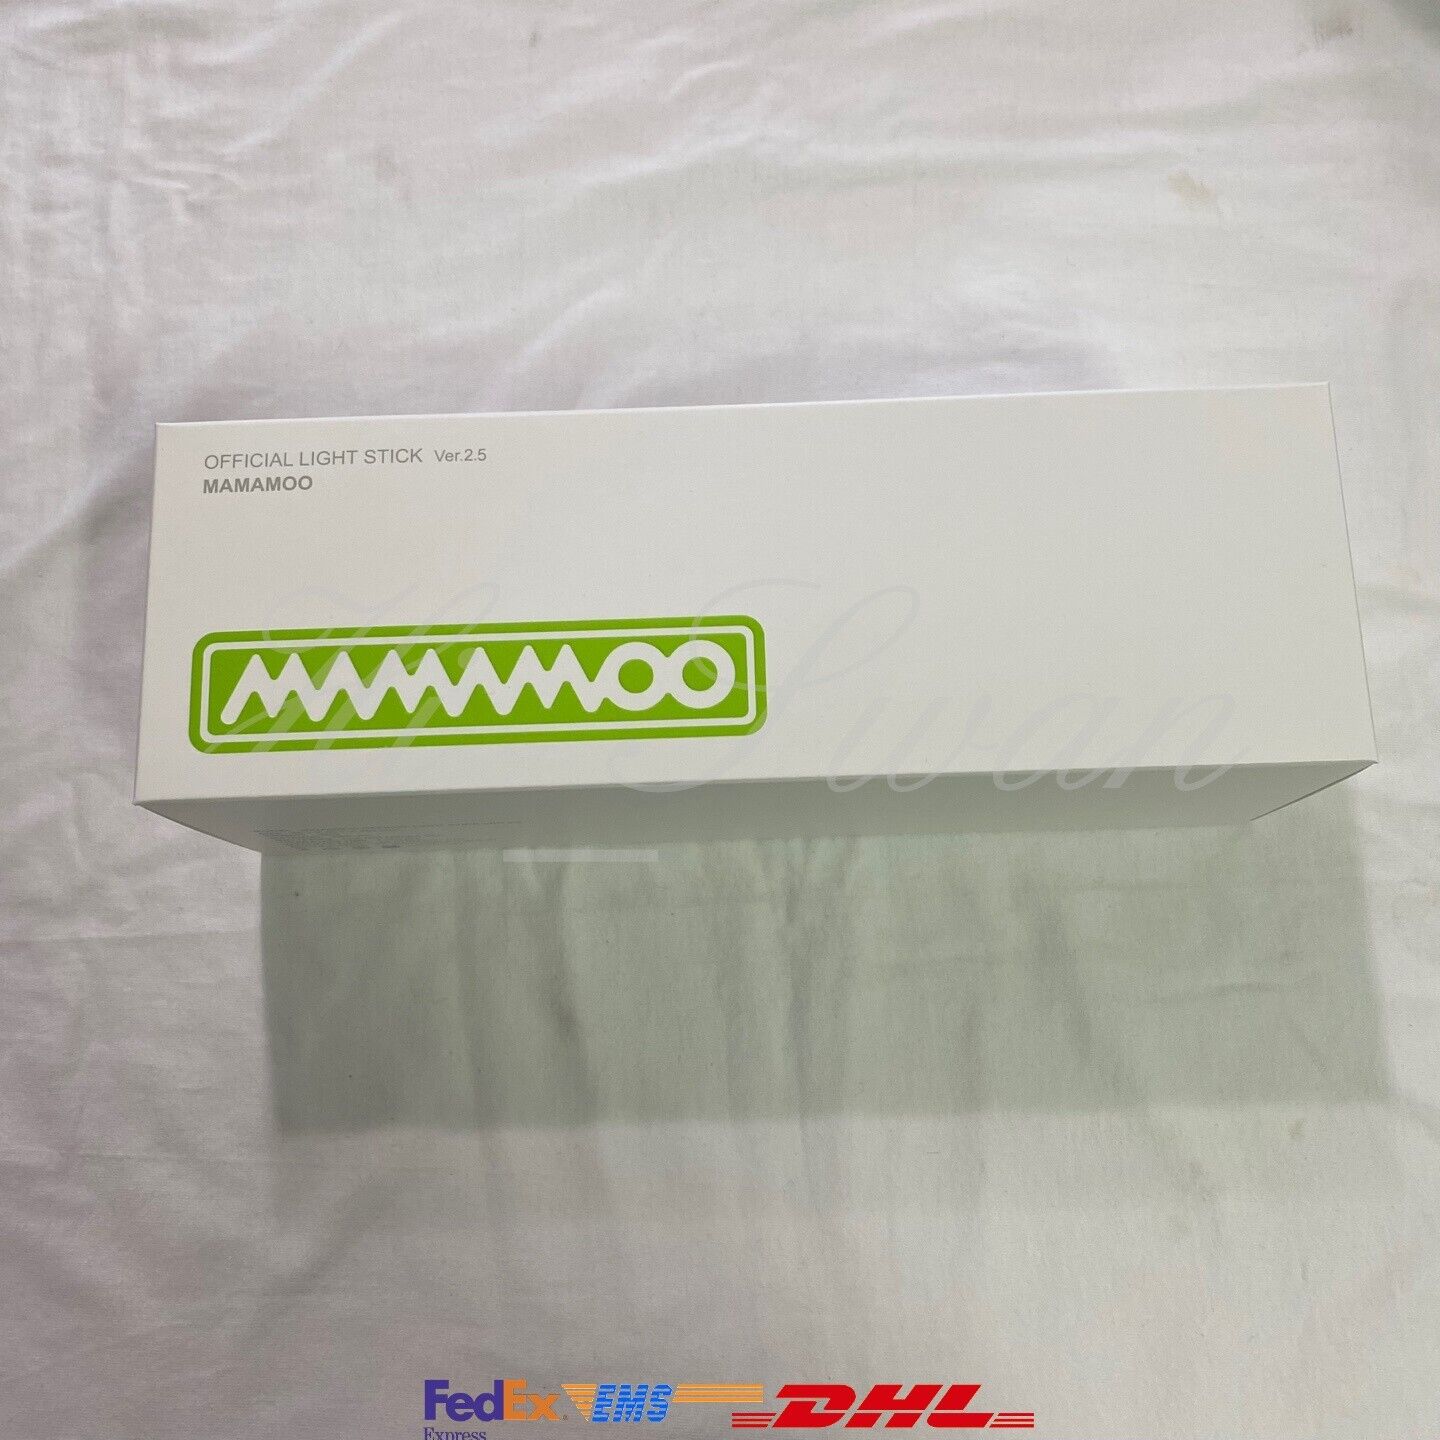 Mamamoo Light Stick Ver2.5 K-pop rábano mercancías oficiales (envío estándar gratuito)